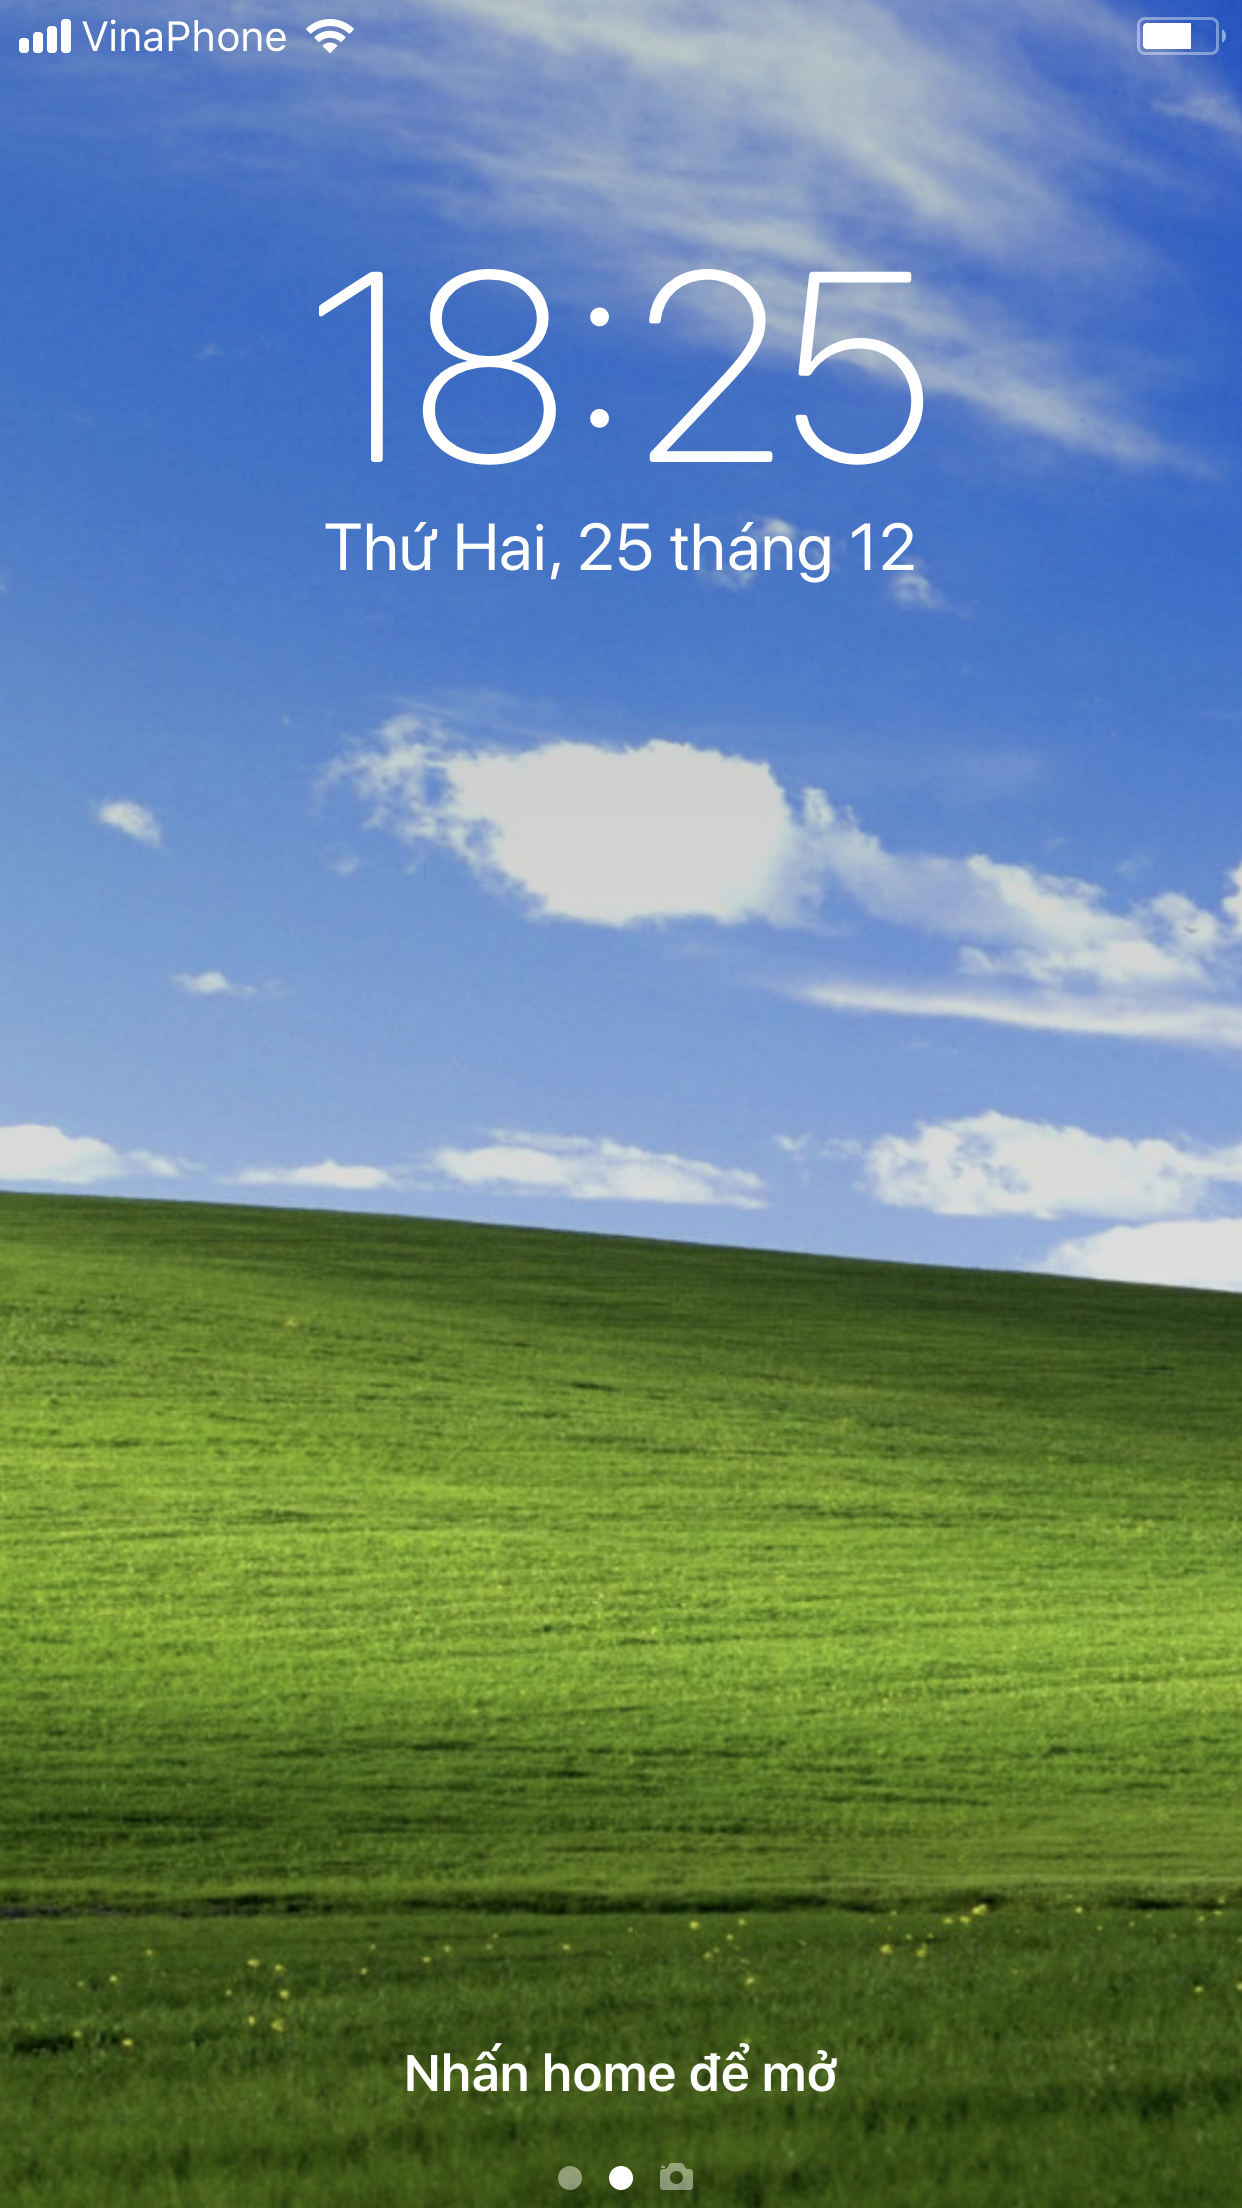 Hình nền Bliss Windows XP: Bạn có muốn tìm kiếm một hình nền tuyệt đẹp và mang tính biểu tượng cho máy tính của mình? Hình nền Bliss Windows XP là lựa chọn hoàn hảo cho bạn. Với những cánh đồng xanh bao la và bầu trời trong xanh, bức ảnh này sẽ mang đến cho bạn cảm giác thư giãn và yên bình.